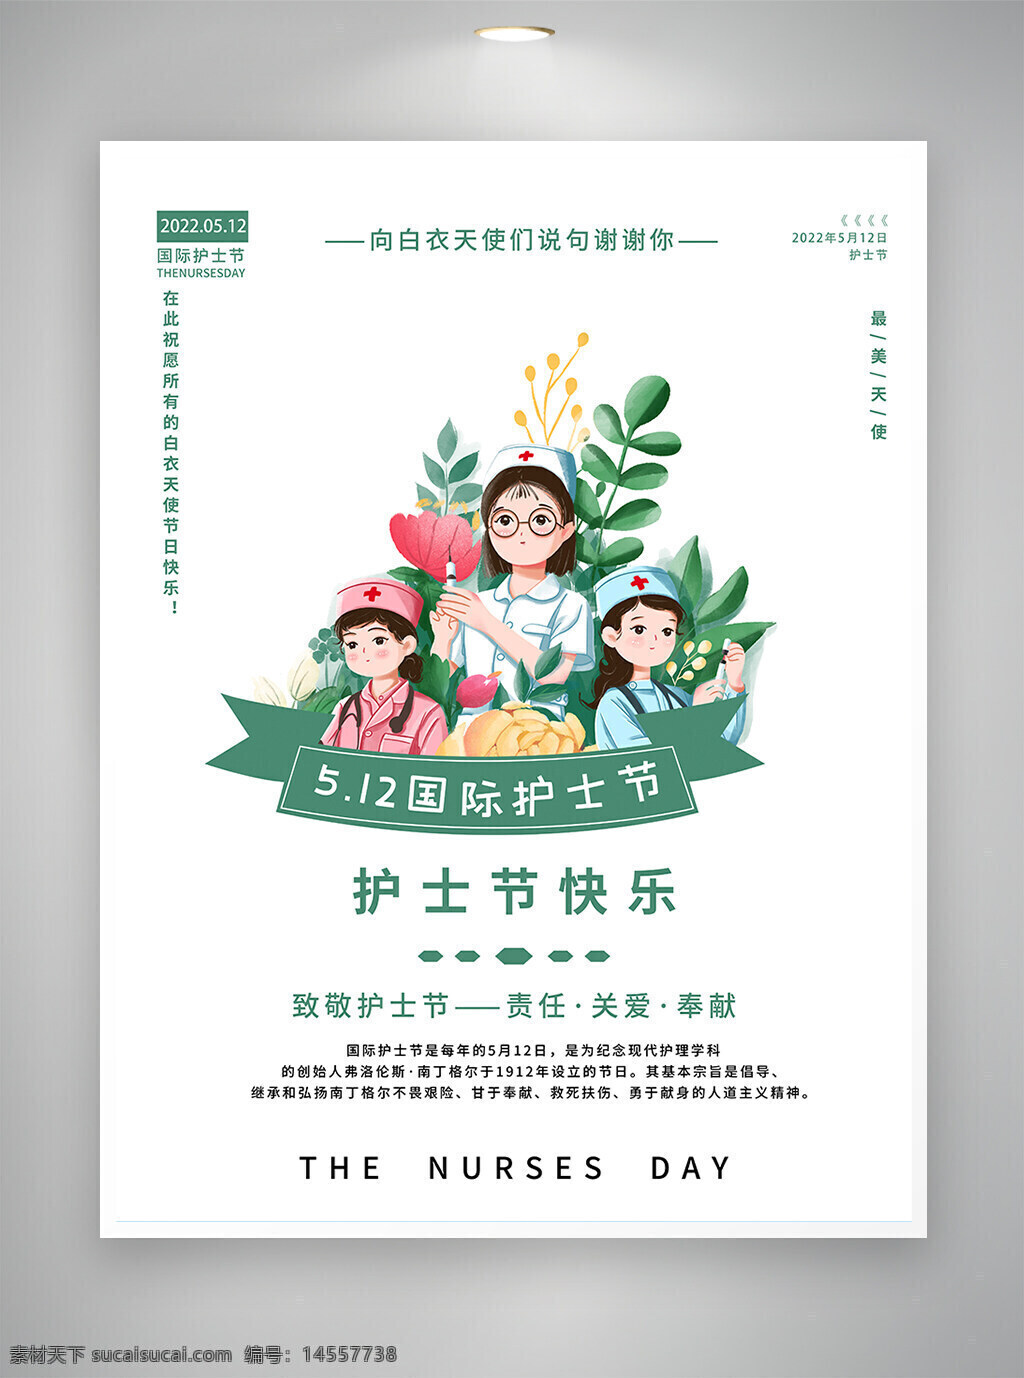 简约海报 手绘风 手绘风海报 国际护士节 护士节 护士节海报 护士节宣传 宣传海报 海报